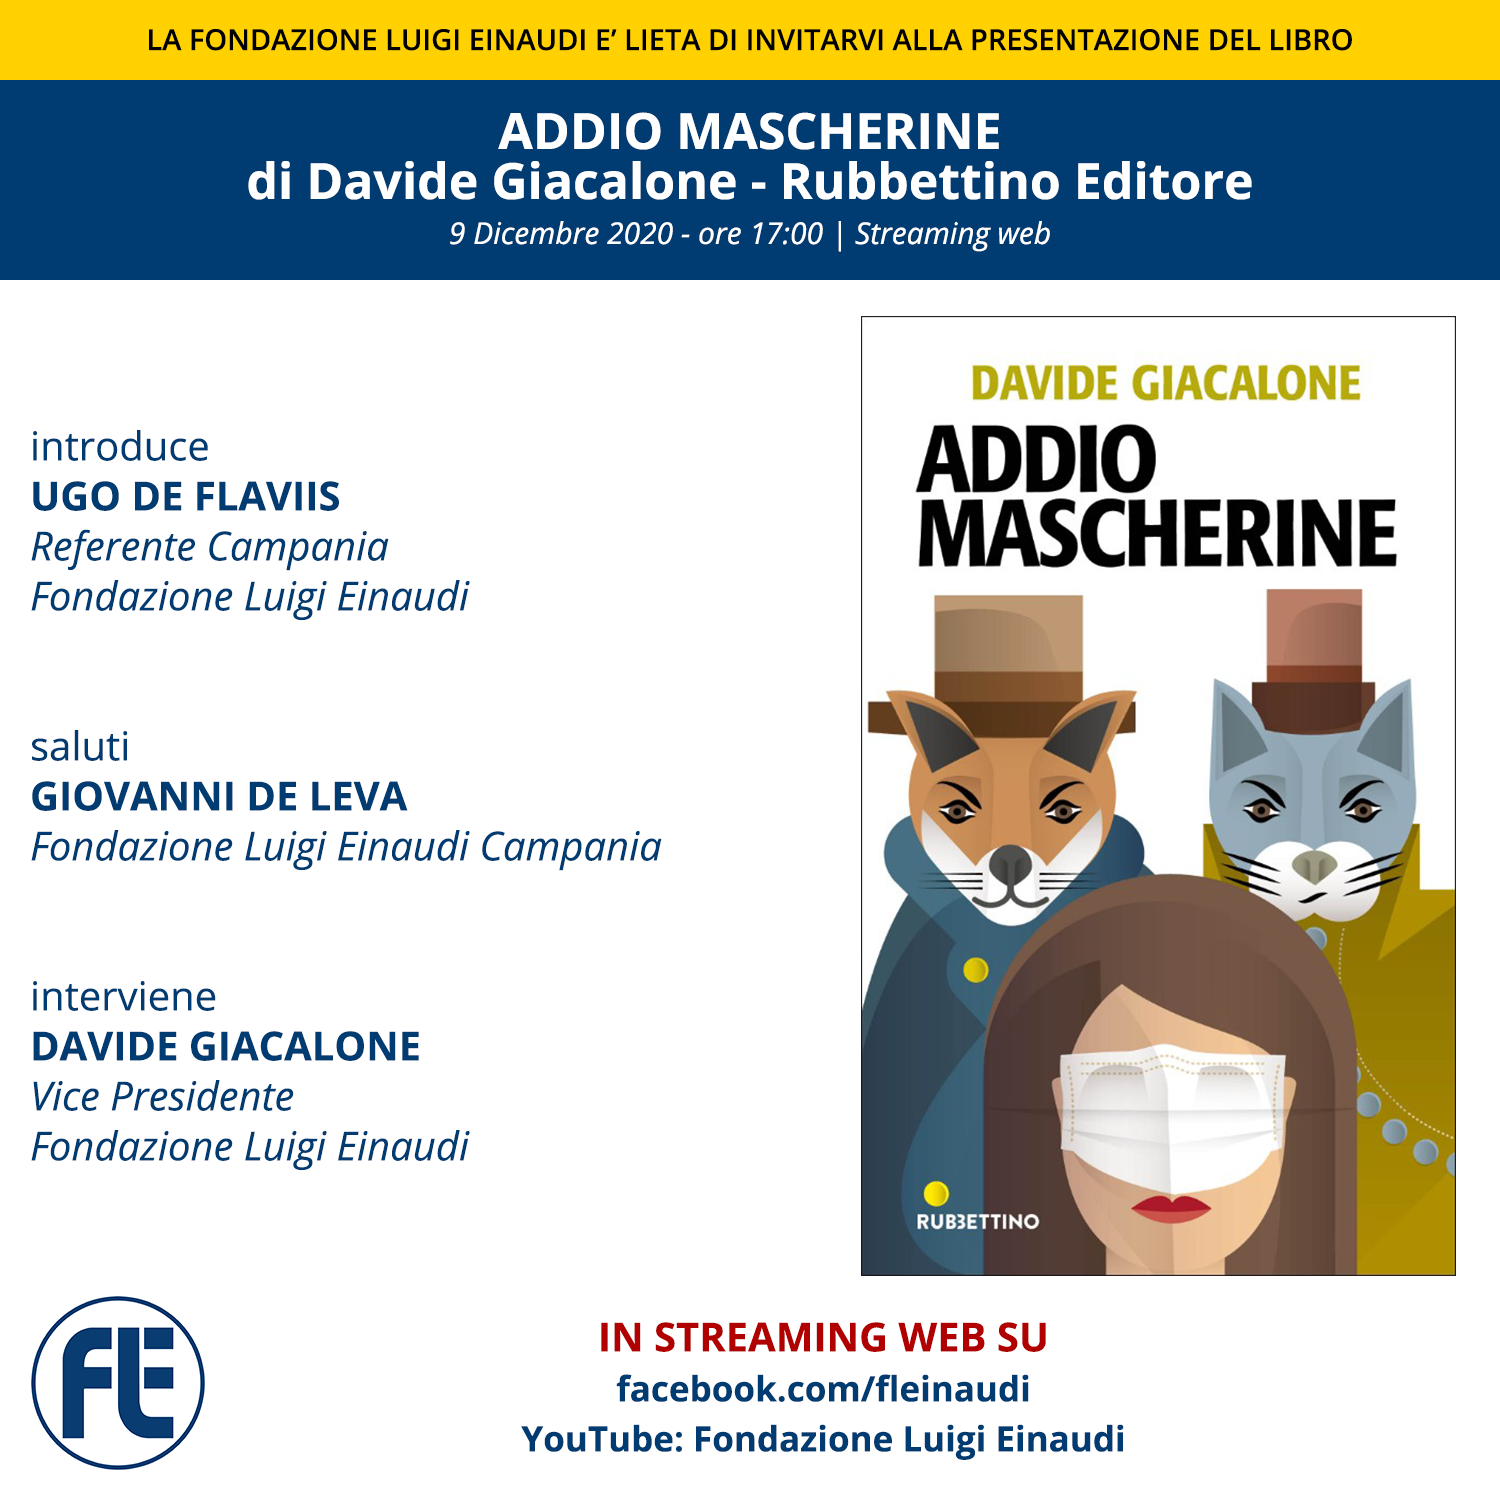 Presentazione del libro “Addio Mascherine” di Davide Giacalone. Con Ugo de Flaviis e Giovanni De Leva